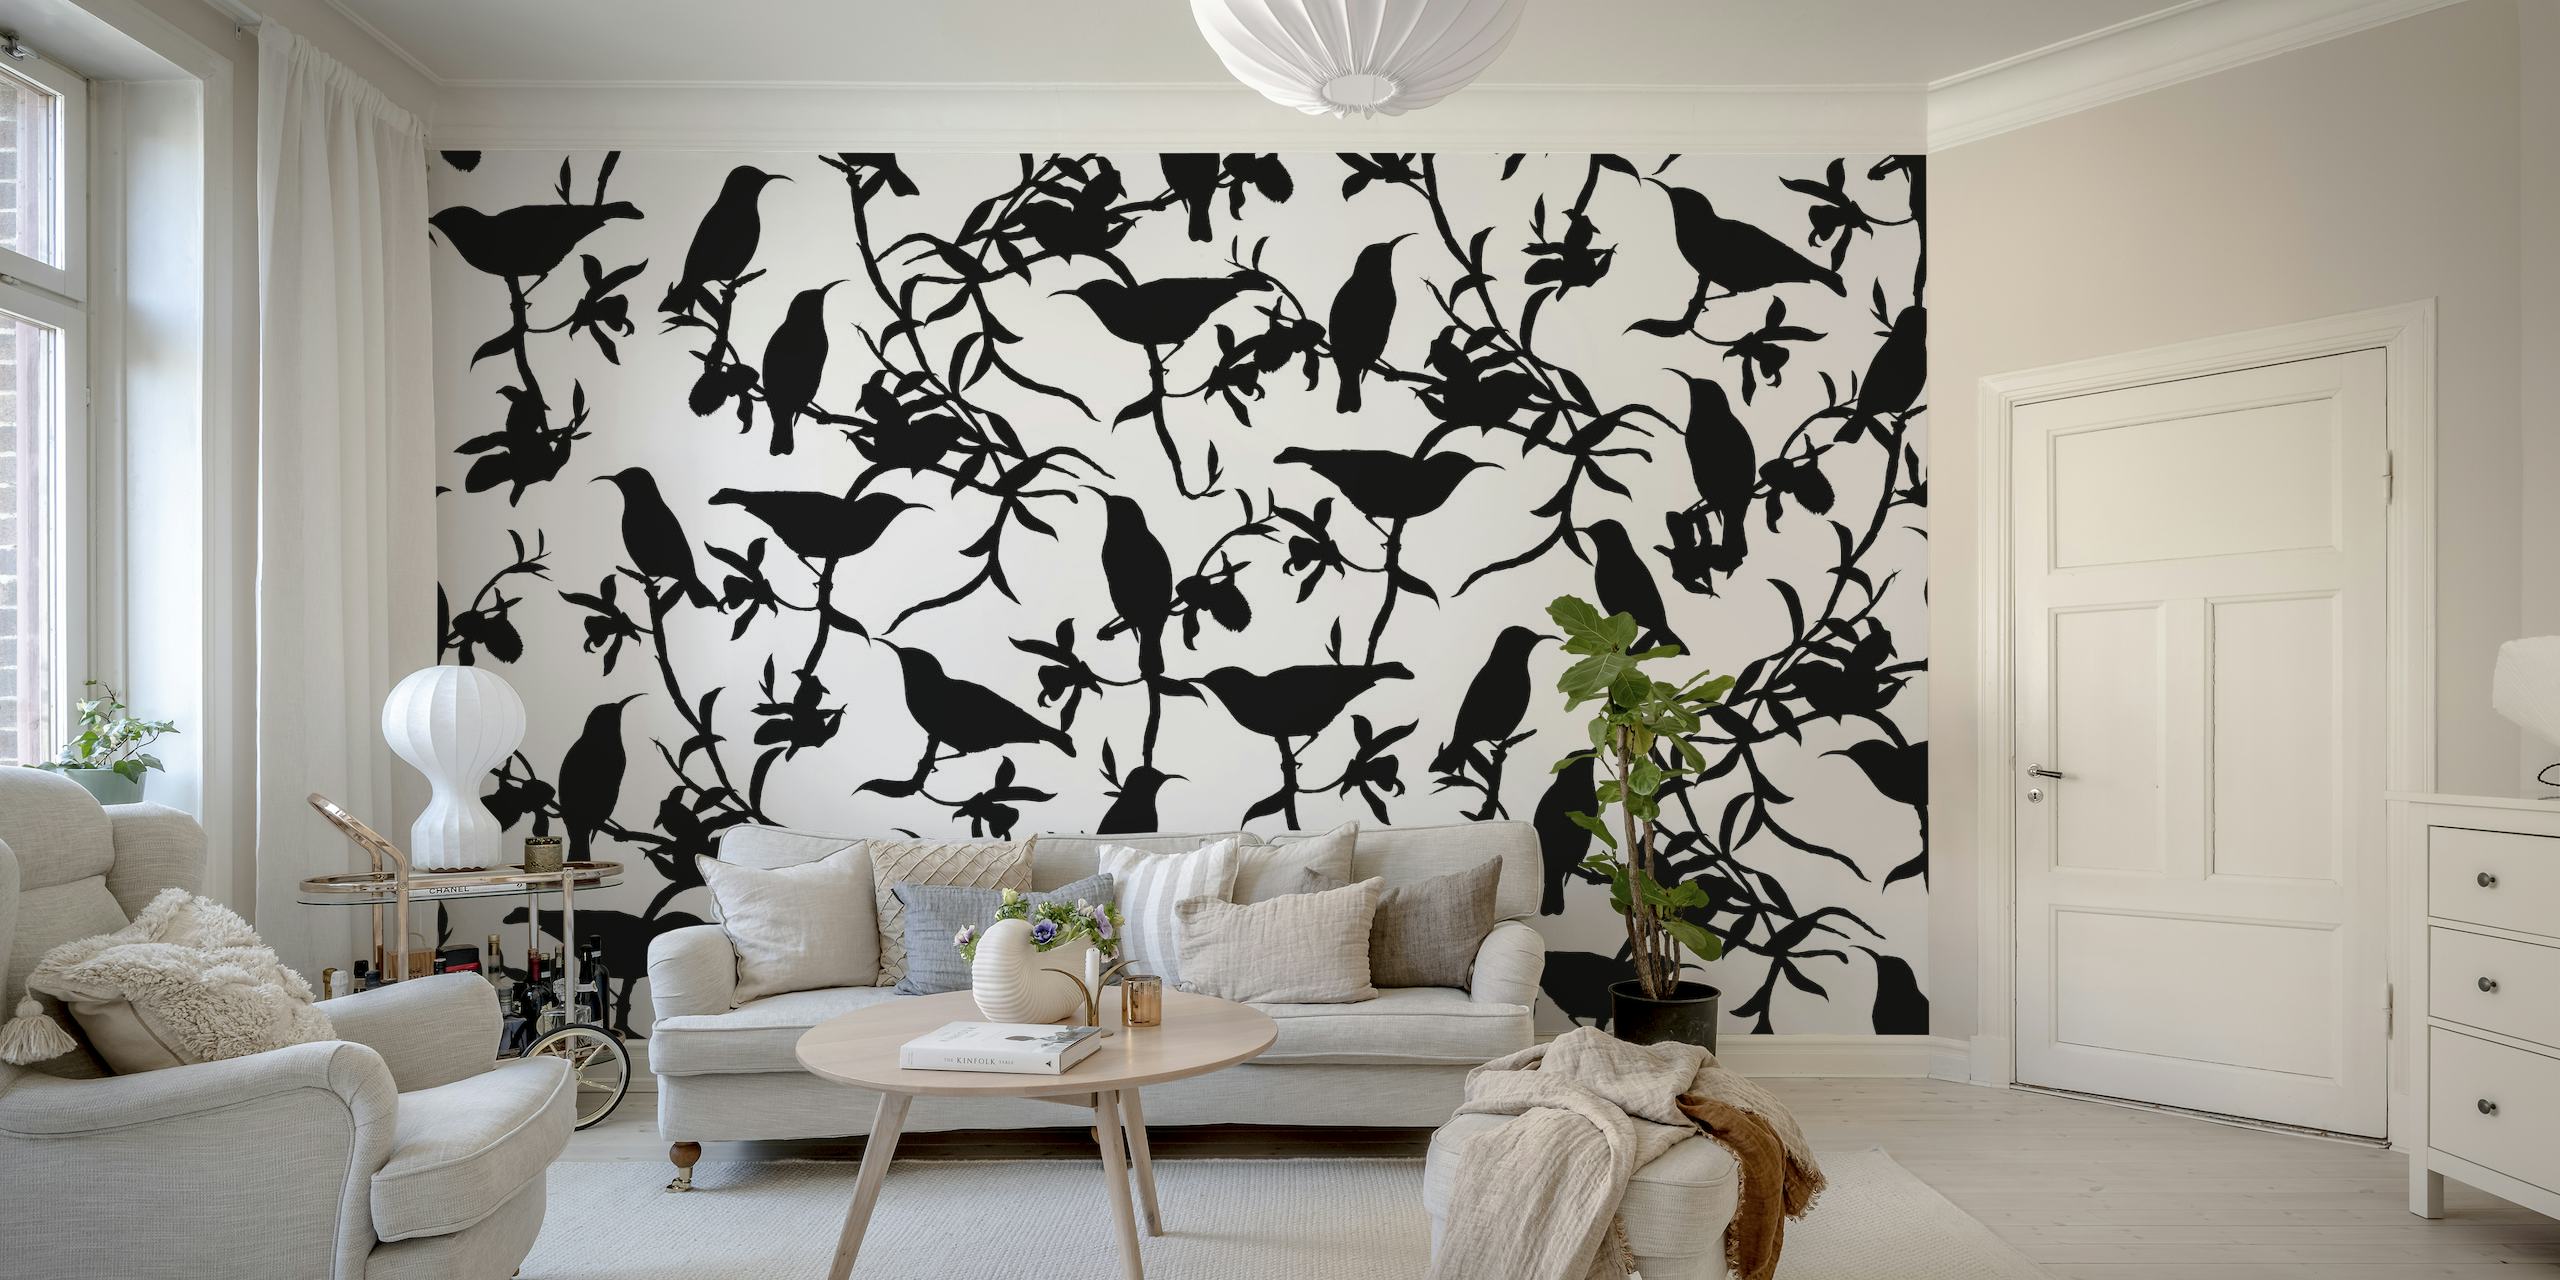 Schwarz-weißes Wandbild mit Kolibri-Chinoiserie-Muster bei Happywall